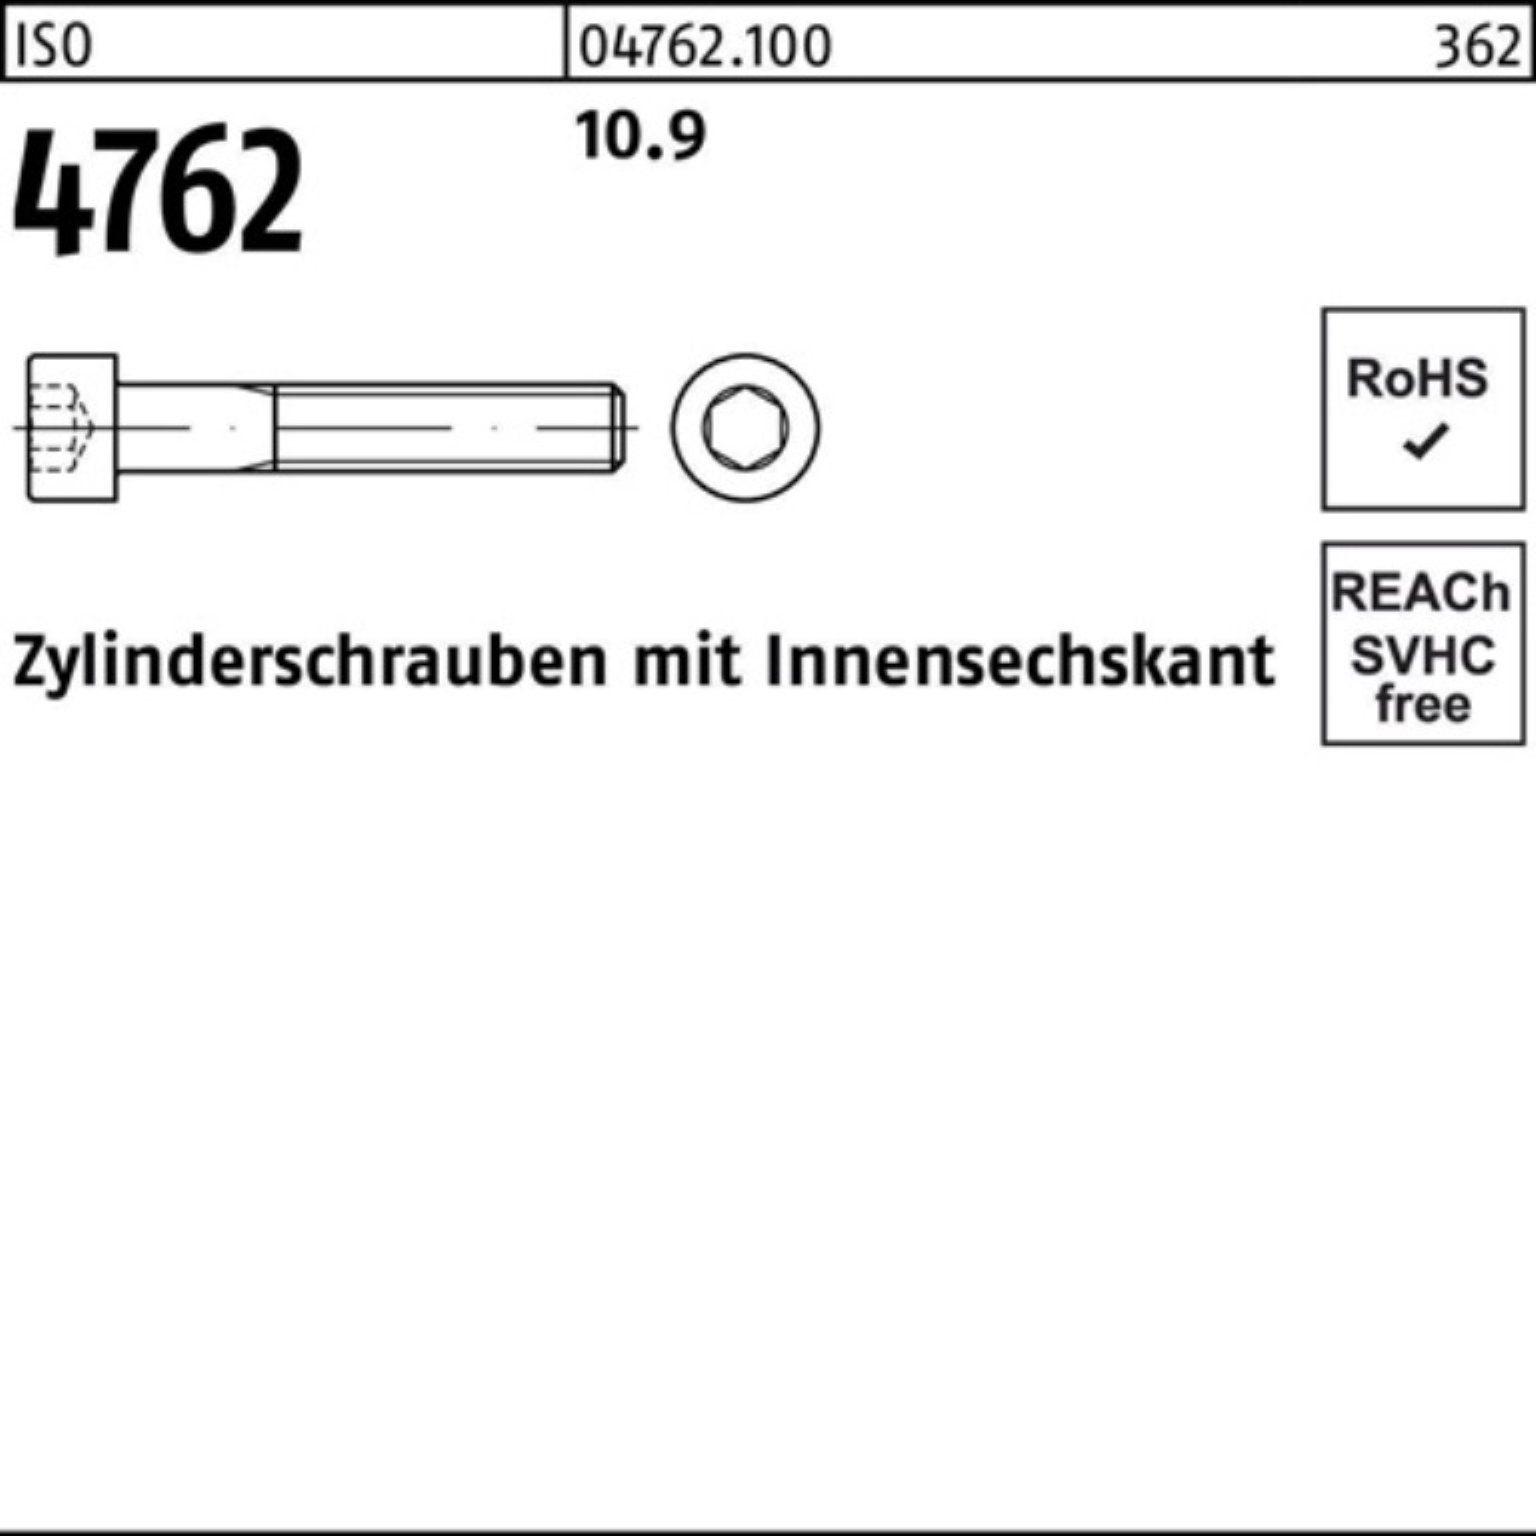 Reyher Zylinderschraube 4762 1 Zylinderschraube 100er Innen-6kt M30x Pack ISO 10.9 Stück 460